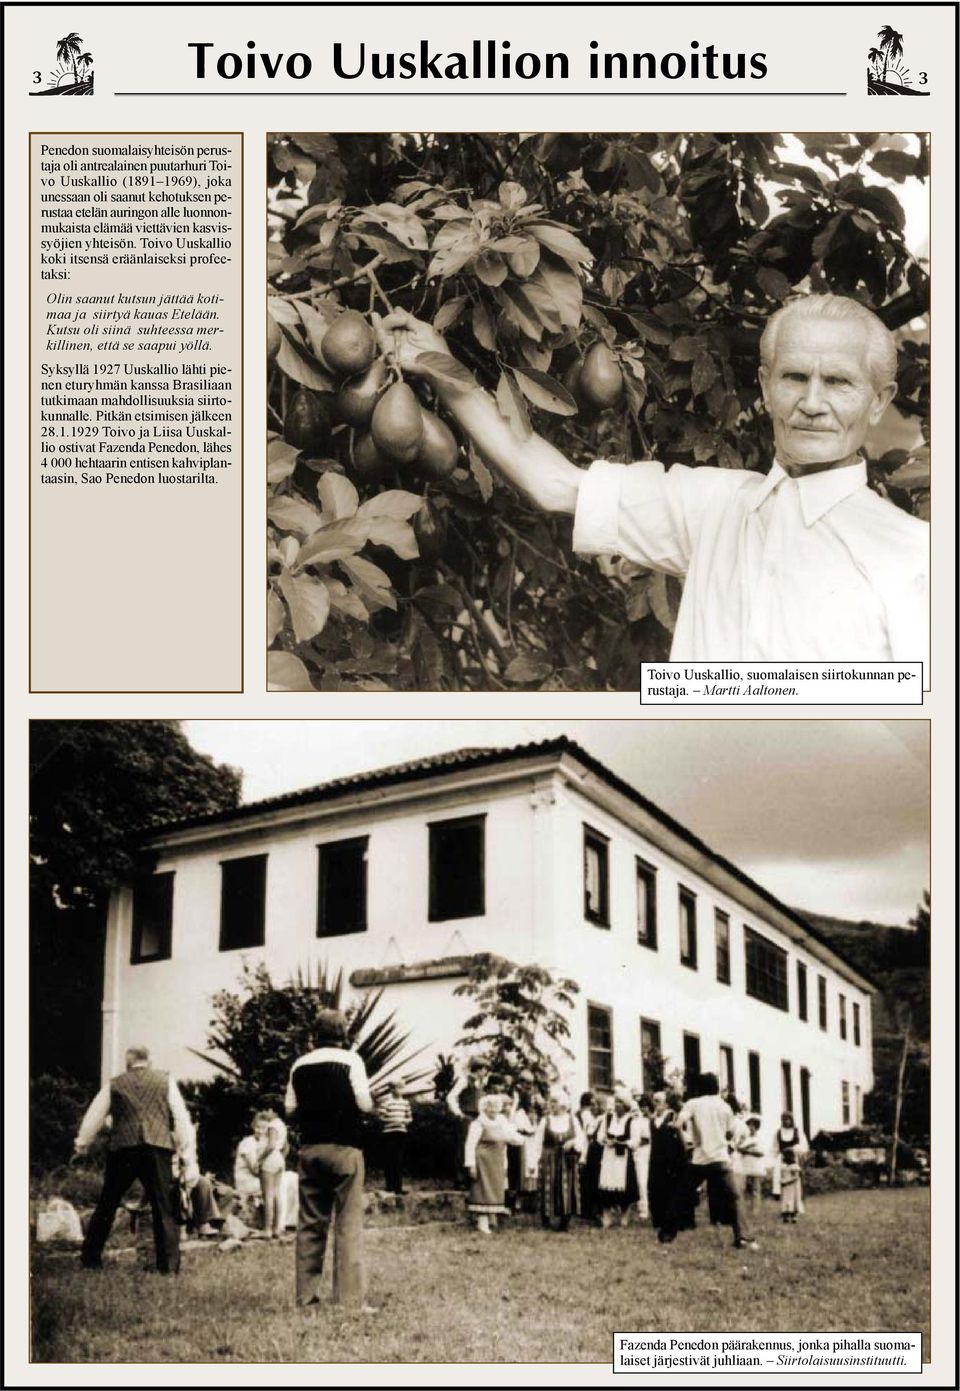 Kutsu oli siinä suhteessa merkillinen, että se saapui yöllä. Syksyllä 1927 Uuskallio lähti pienen eturyhmän kanssa Brasiliaan tutkimaan mahdollisuuksia siirtokunnalle. Pitkän etsimisen jälkeen 28.1.1929 Toivo ja Liisa Uuskallio ostivat Fazenda Penedon, lähes 4 000 hehtaarin entisen kahviplantaasin, Sao Penedon luostarilta.